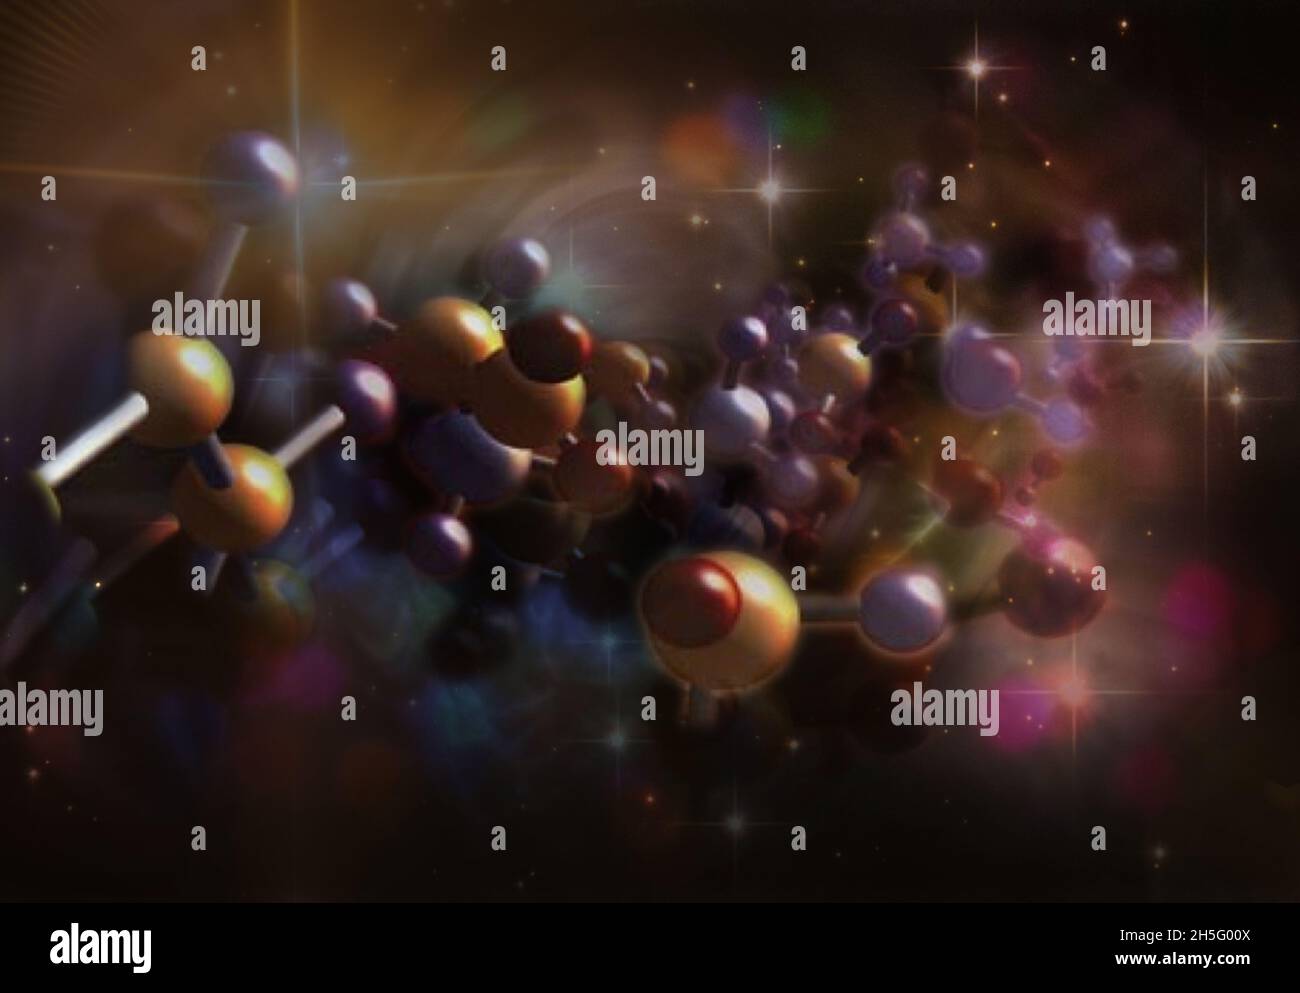 Molécules dans l'espace.Théorie de l'origine de la vie.Éléments de cette image fournis par la NASA. Banque D'Images